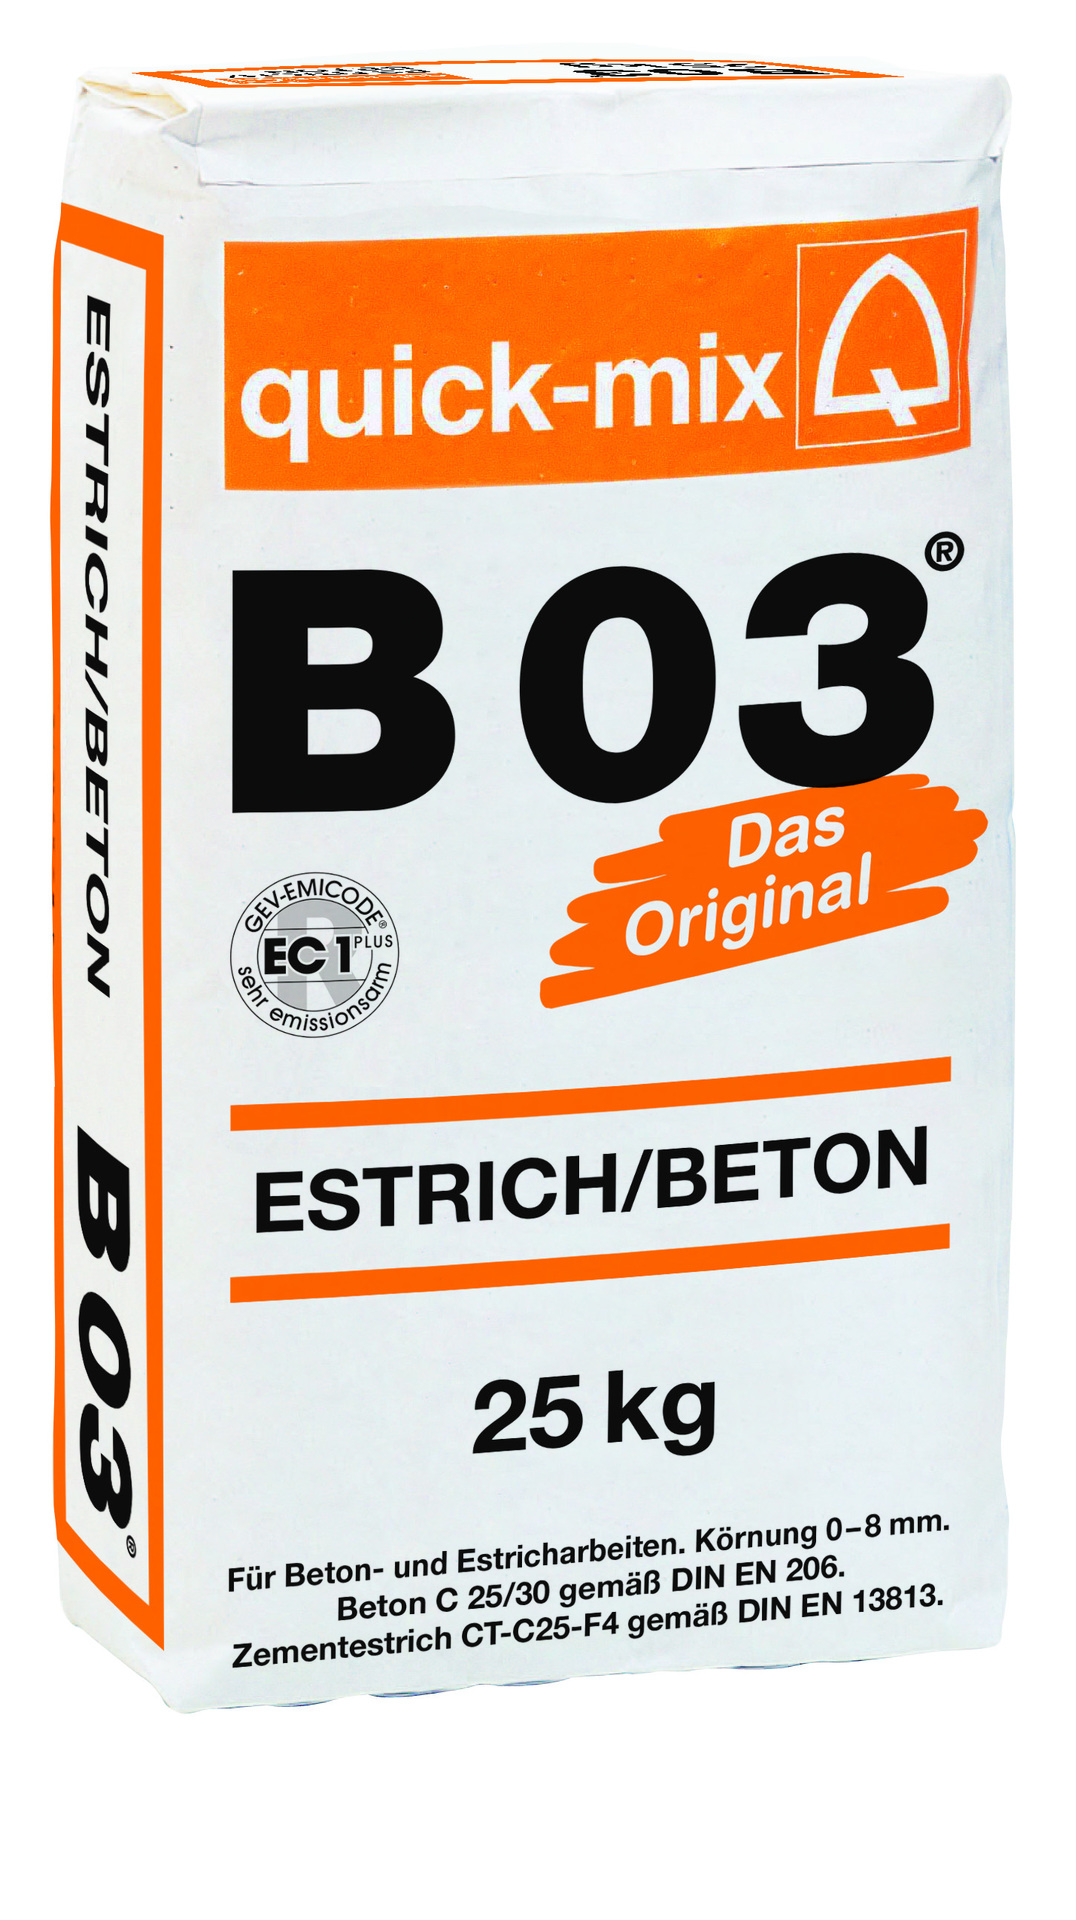 Sievert Baustoffe GmbH Estrichbeton